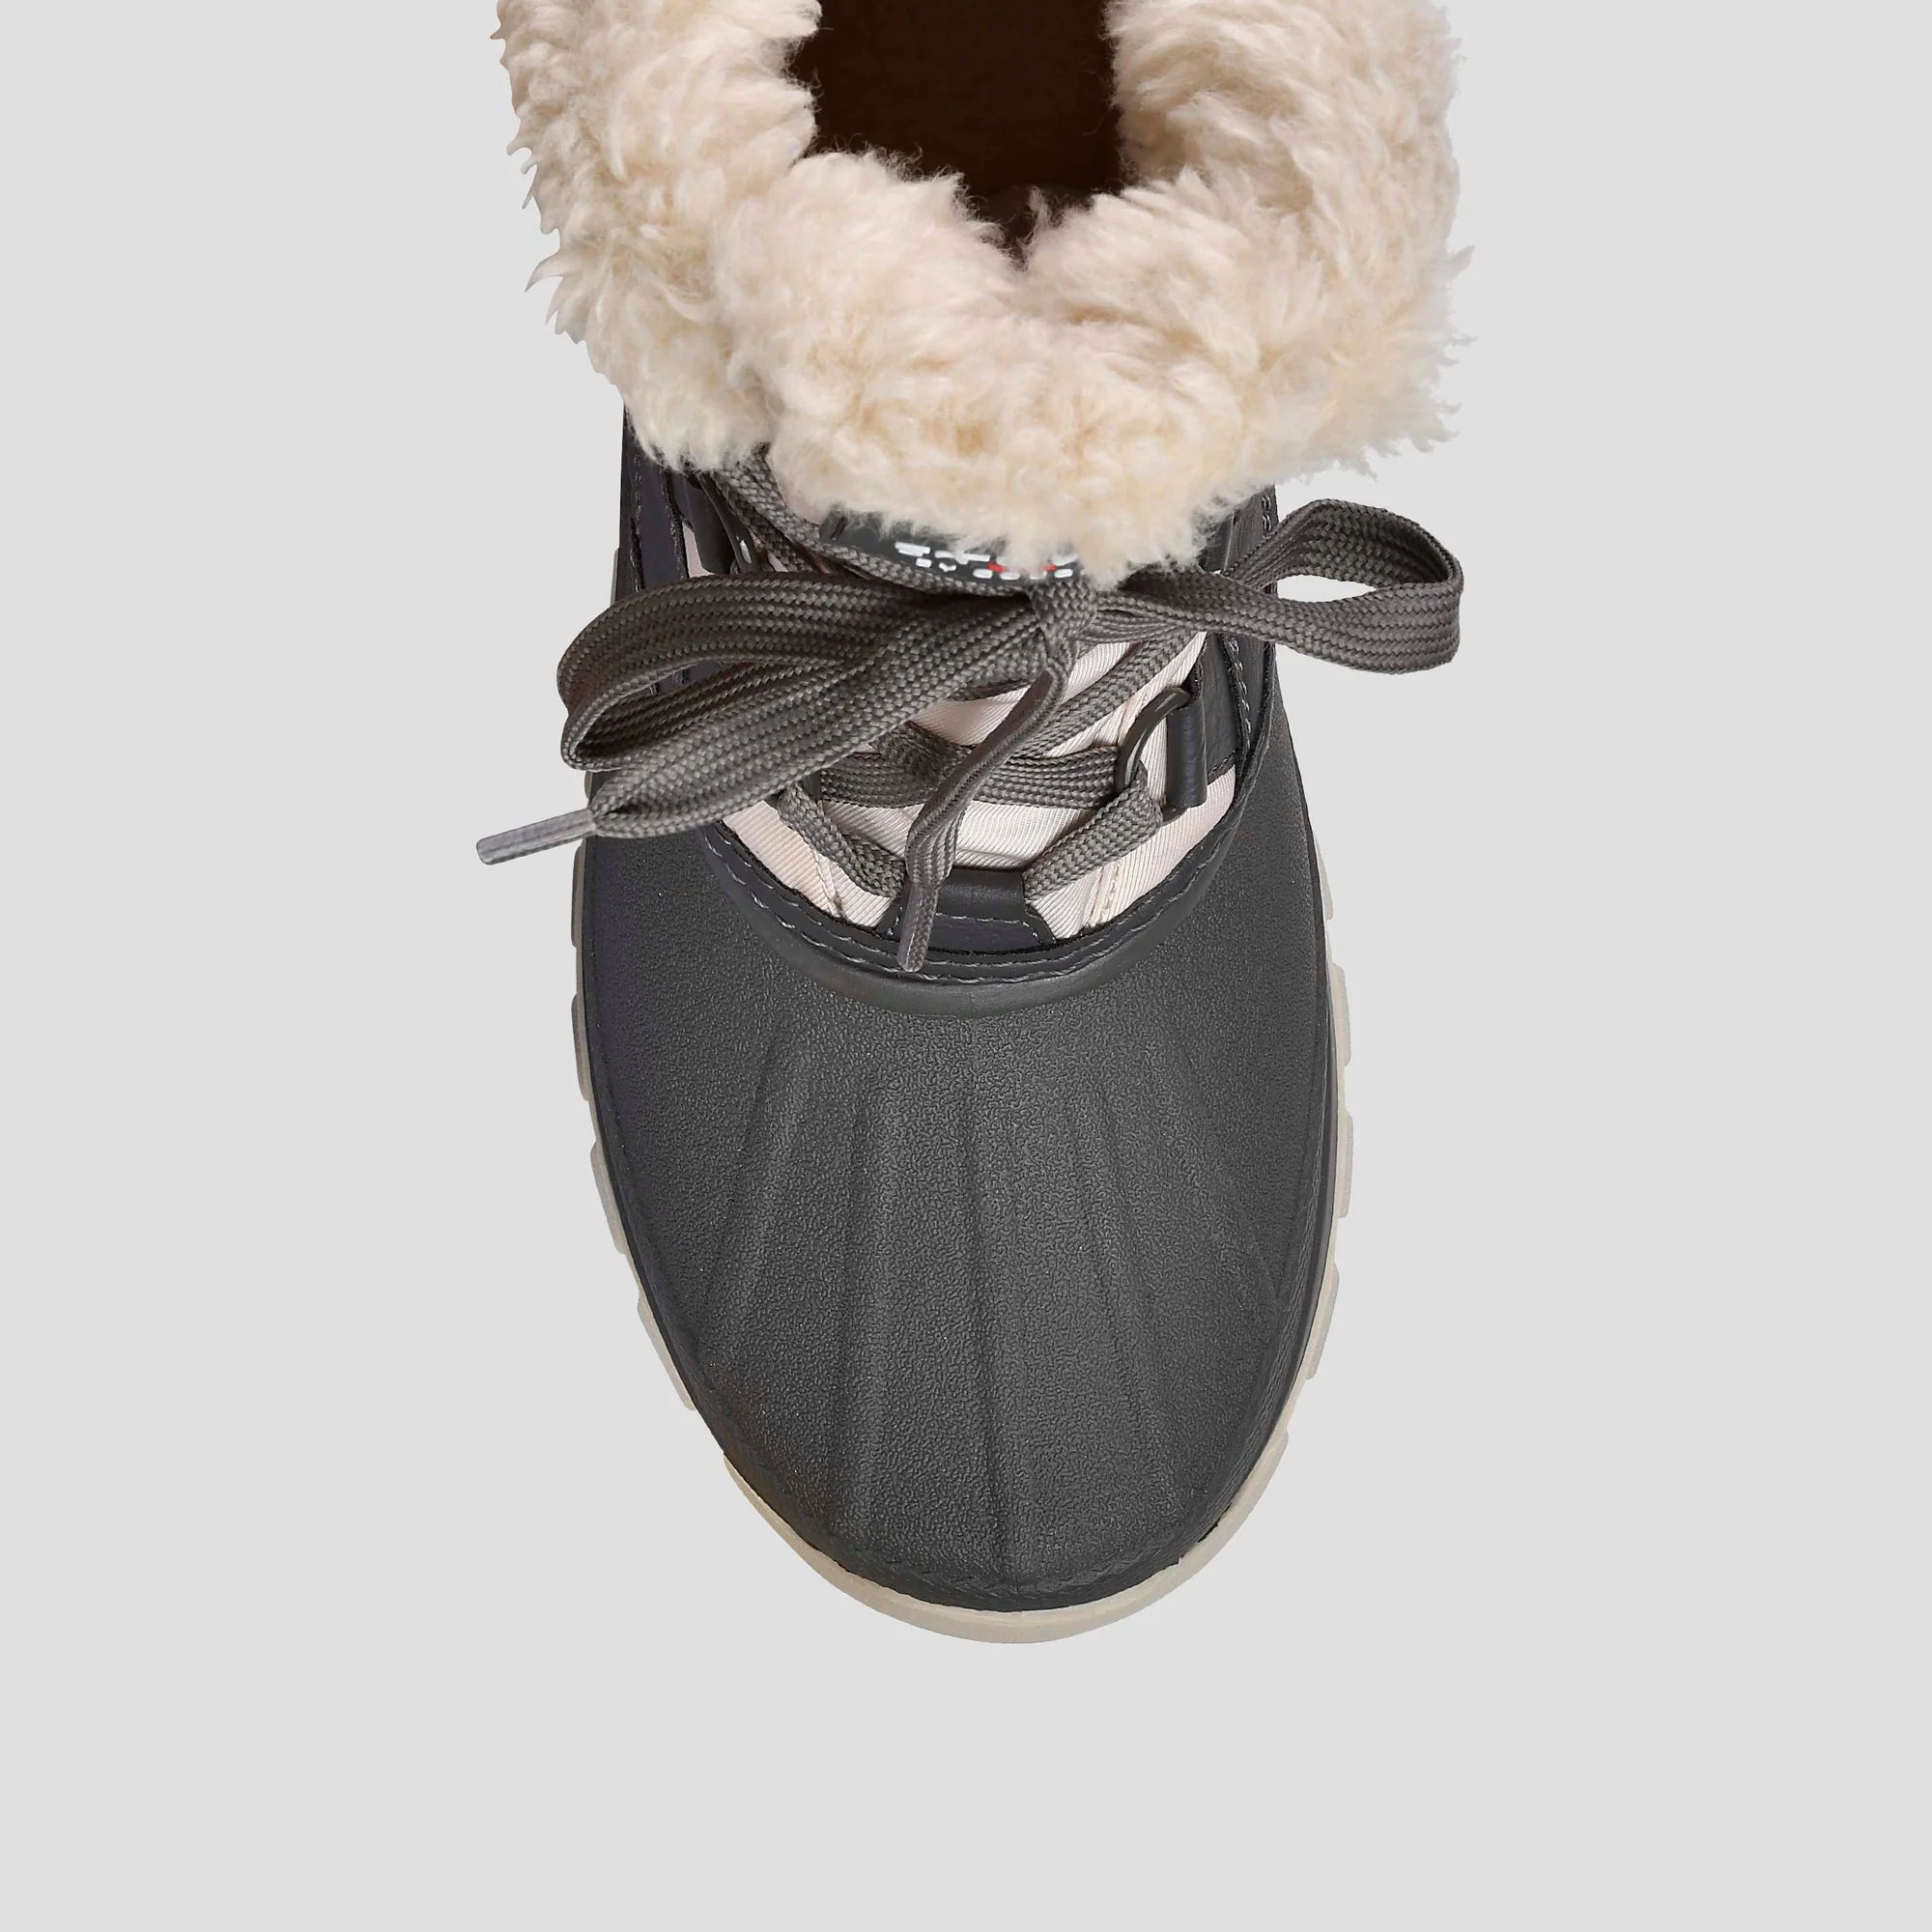 COUGAR SHOES FURY - Nylon Winter Boot - Boutique Bubbles